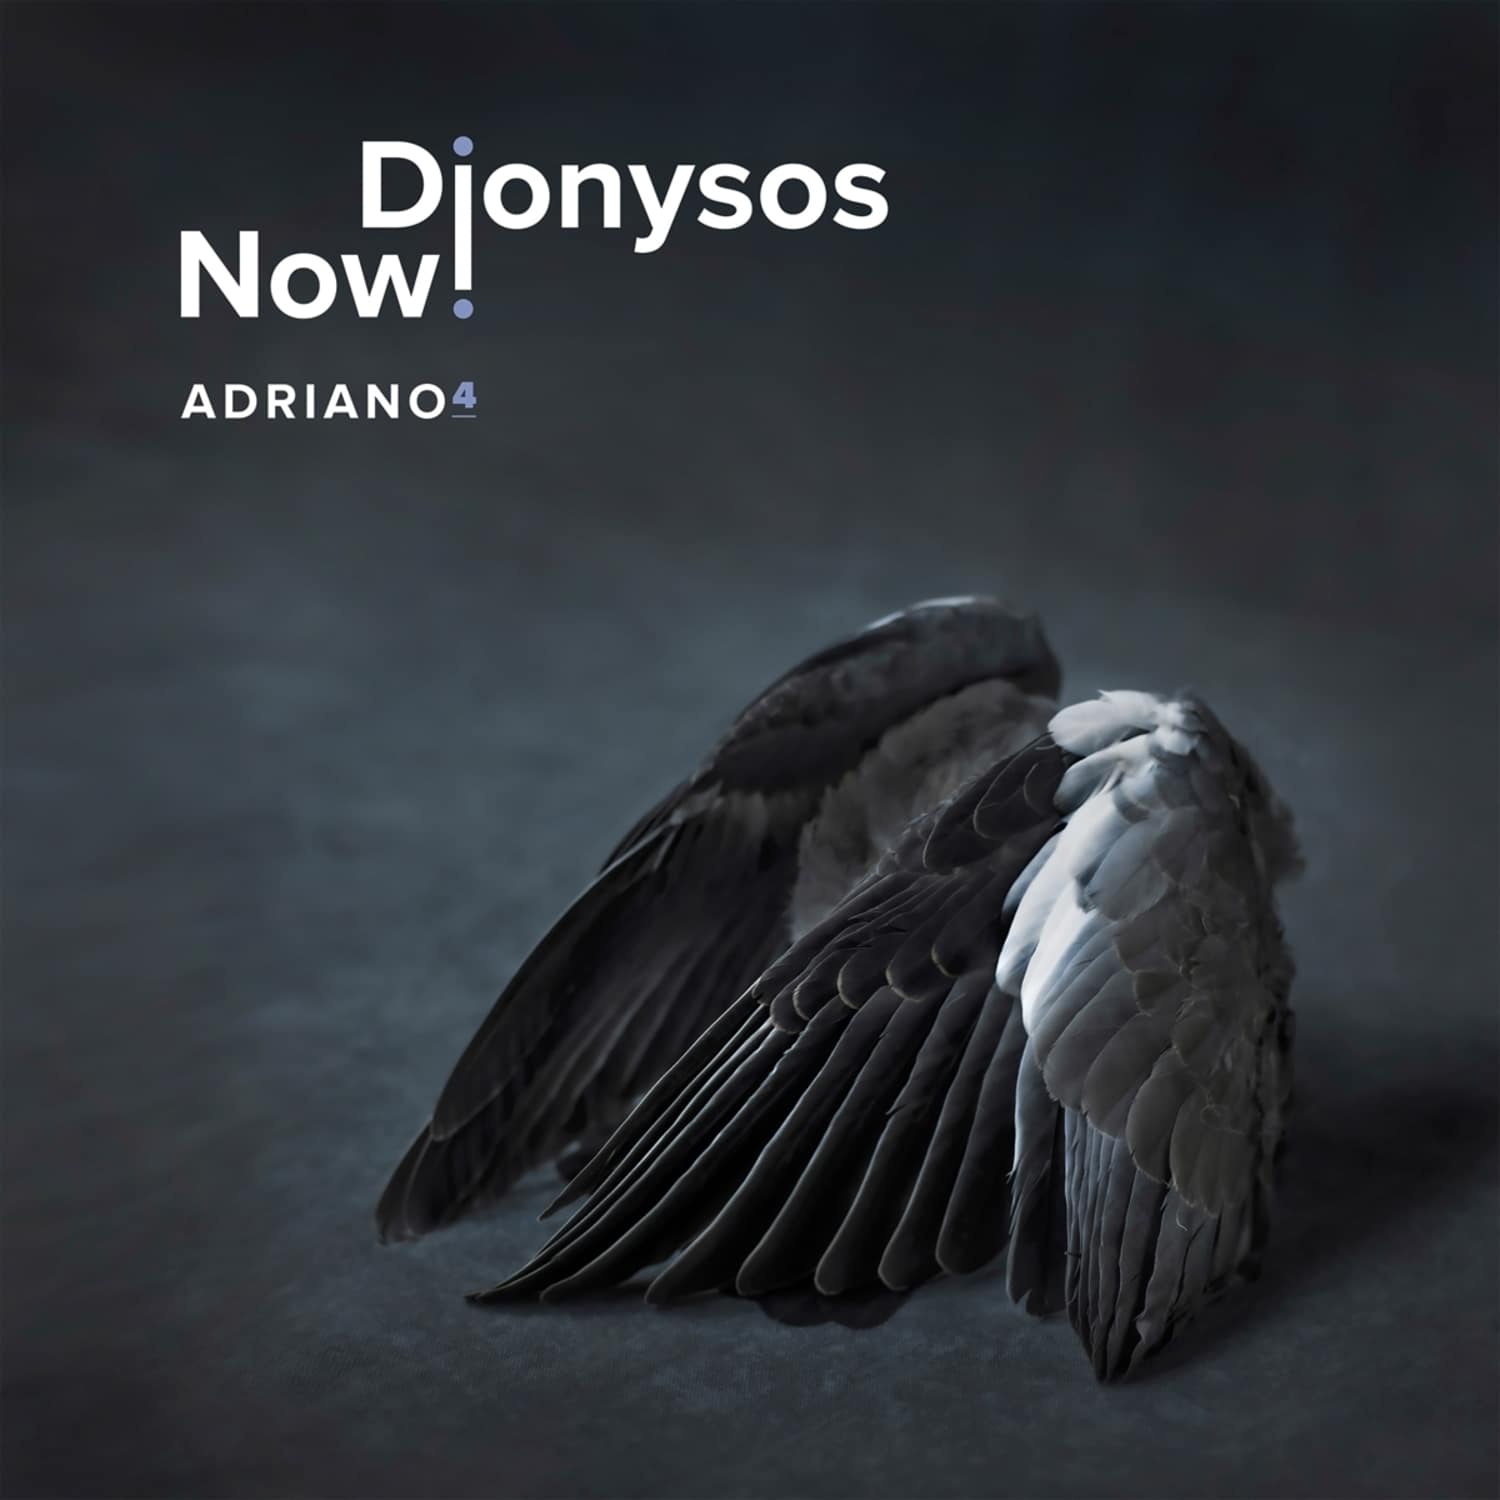 Dionysos Now! - ADRIANO 4 